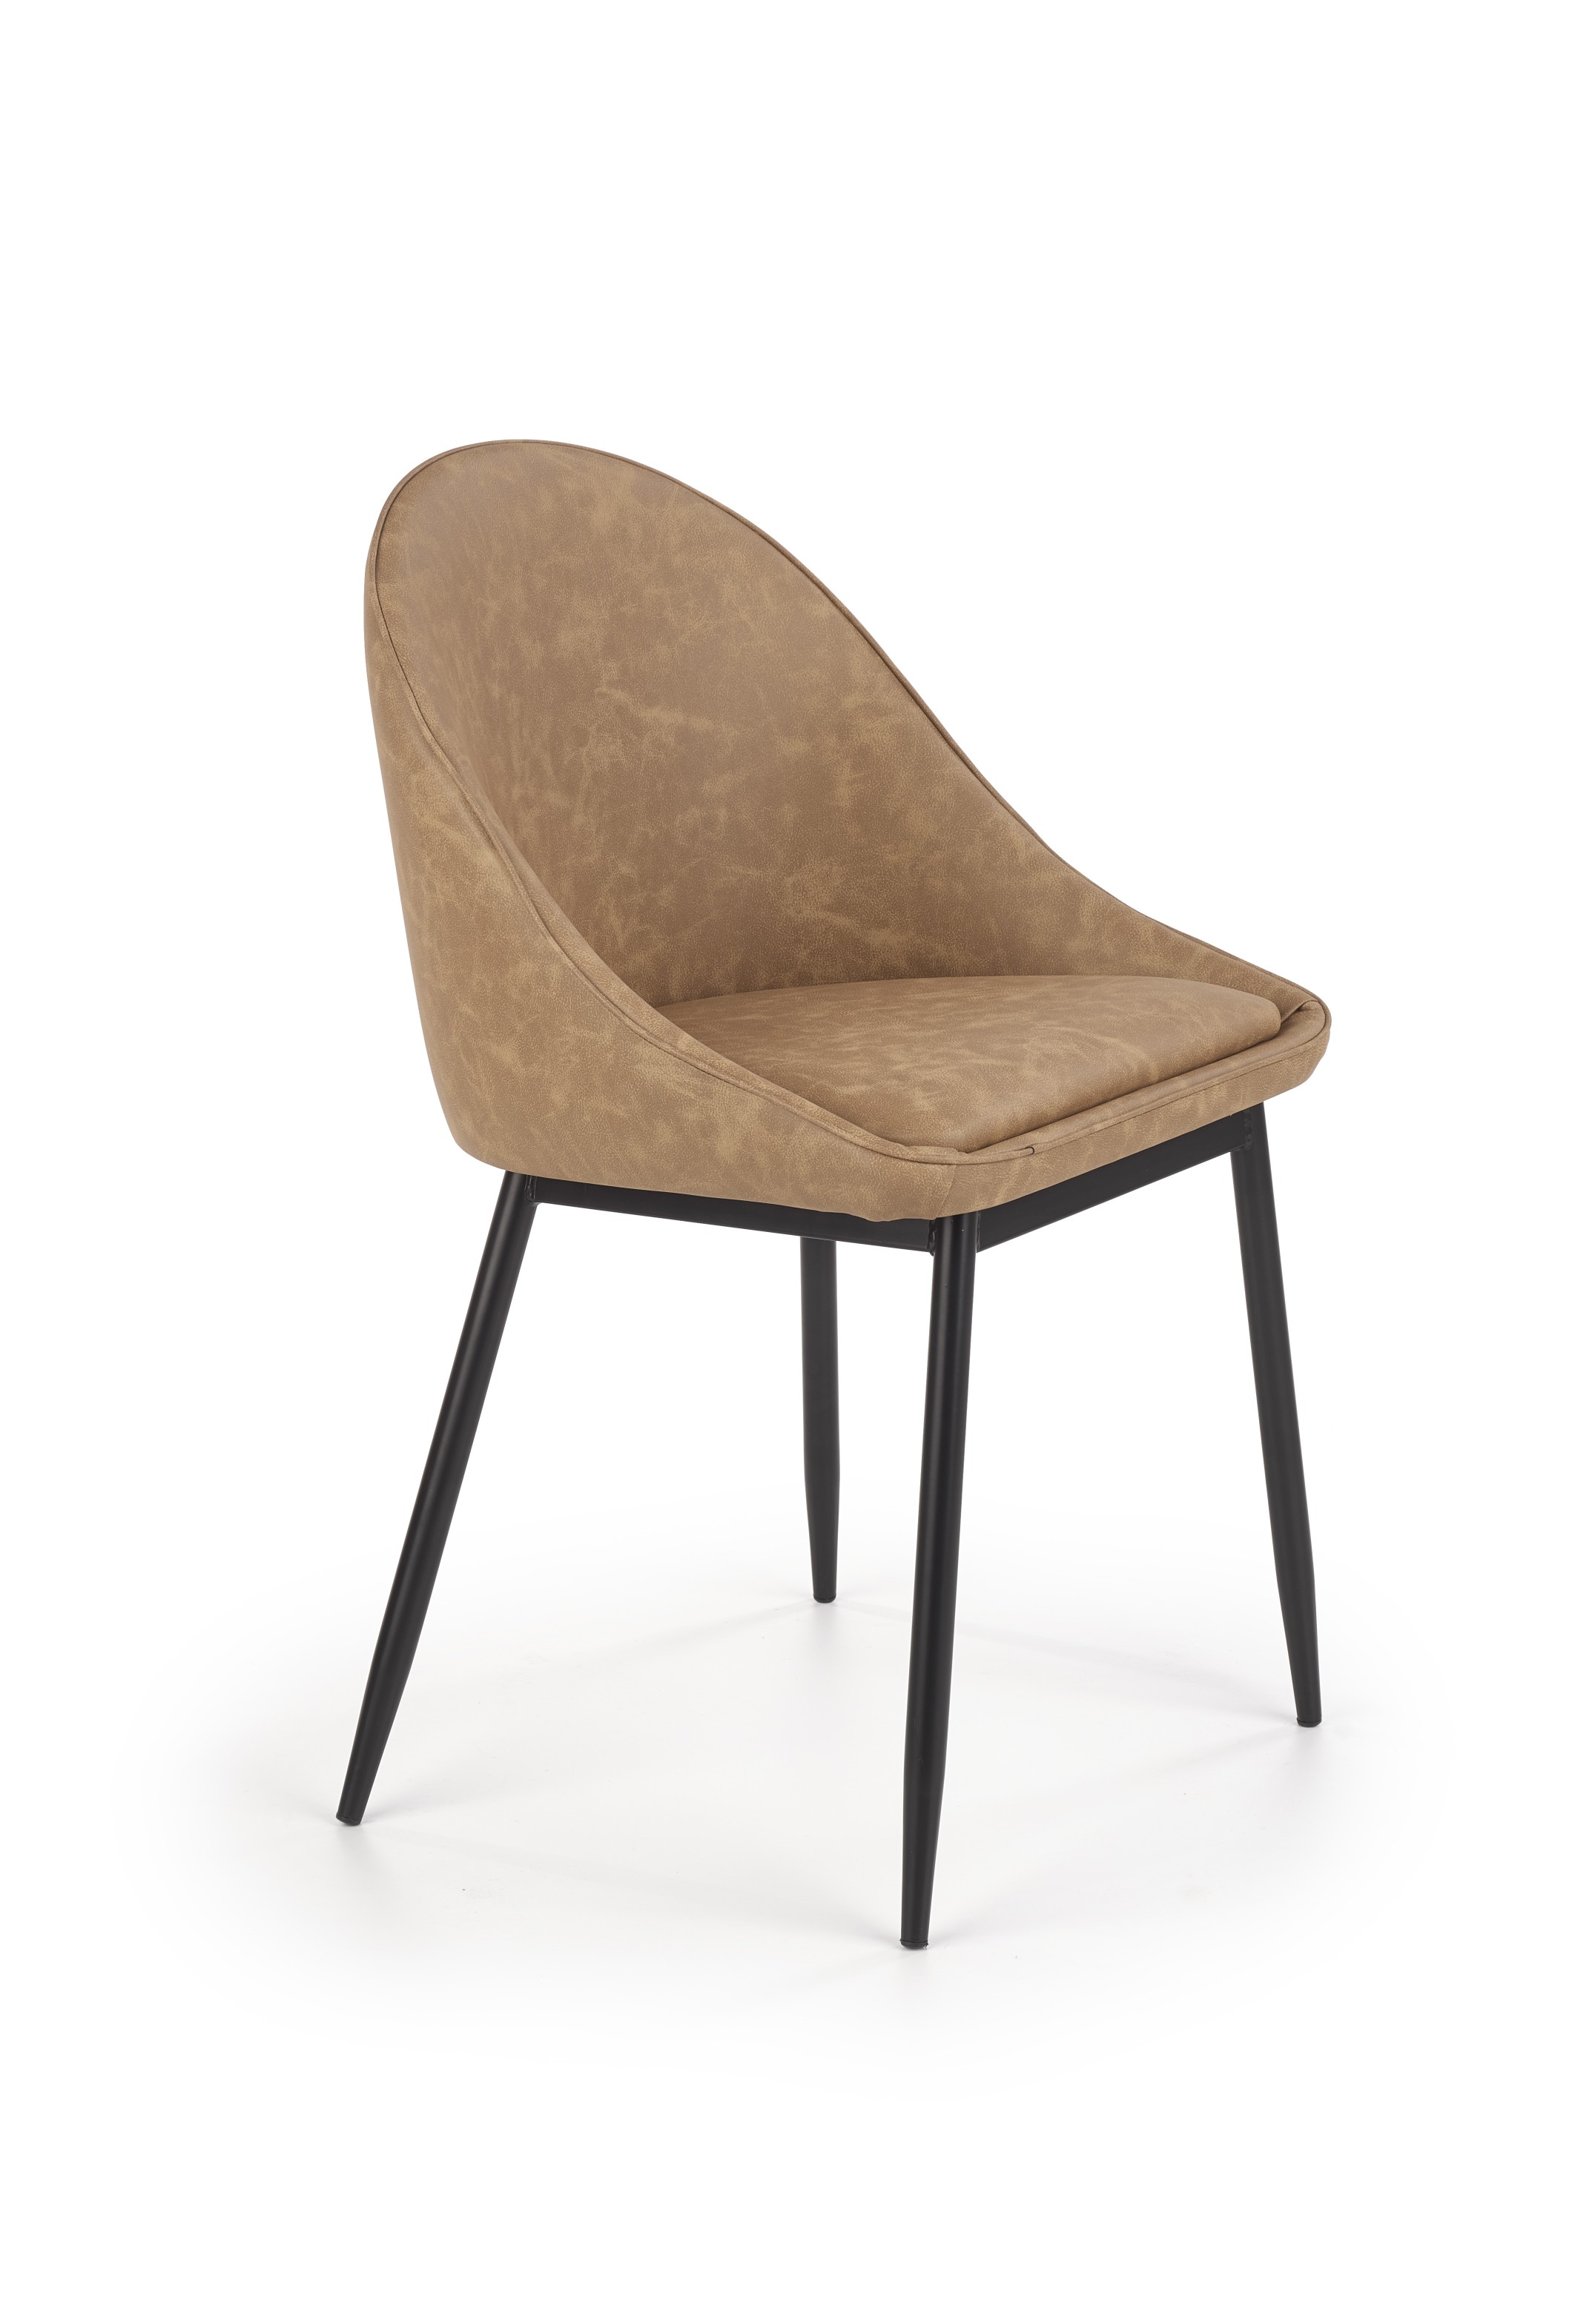 K406 krzesło jasny brązowy